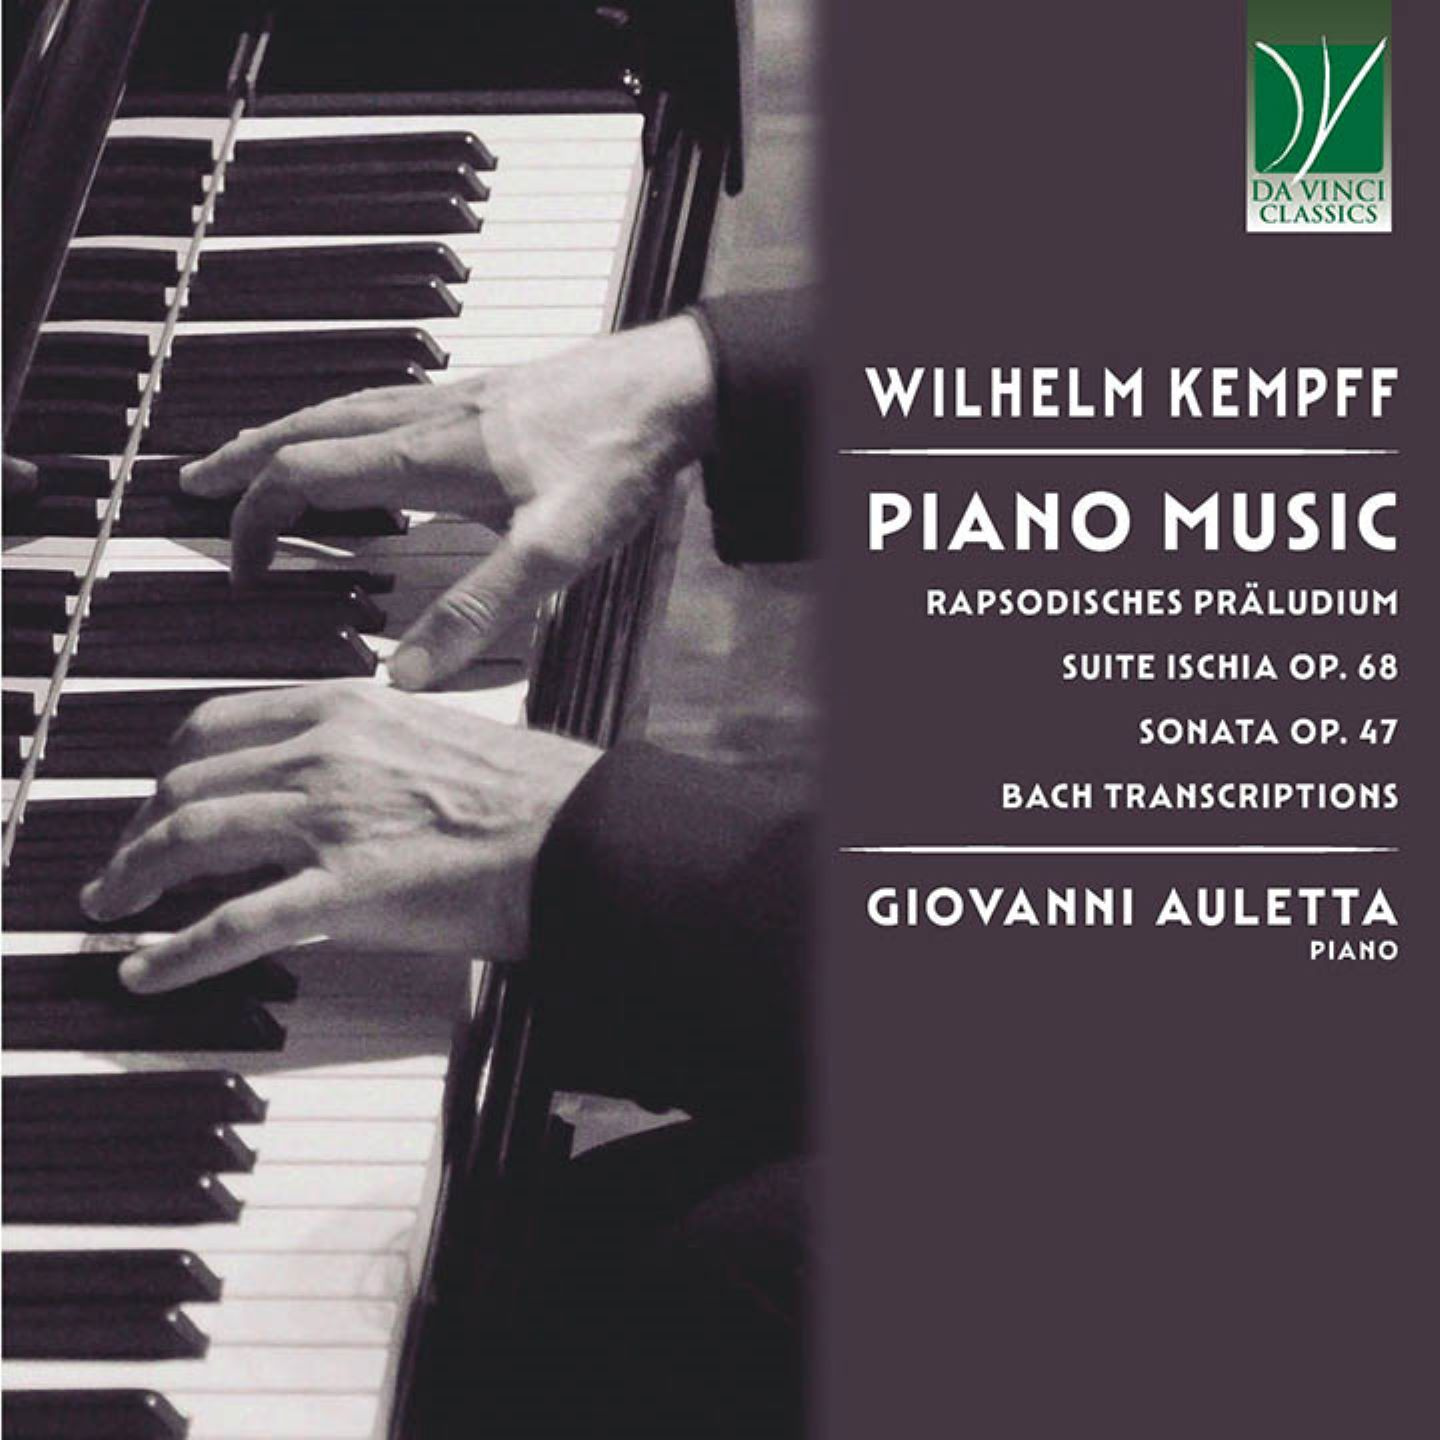 WILHELM KEMPFF: PIANO MUSIC